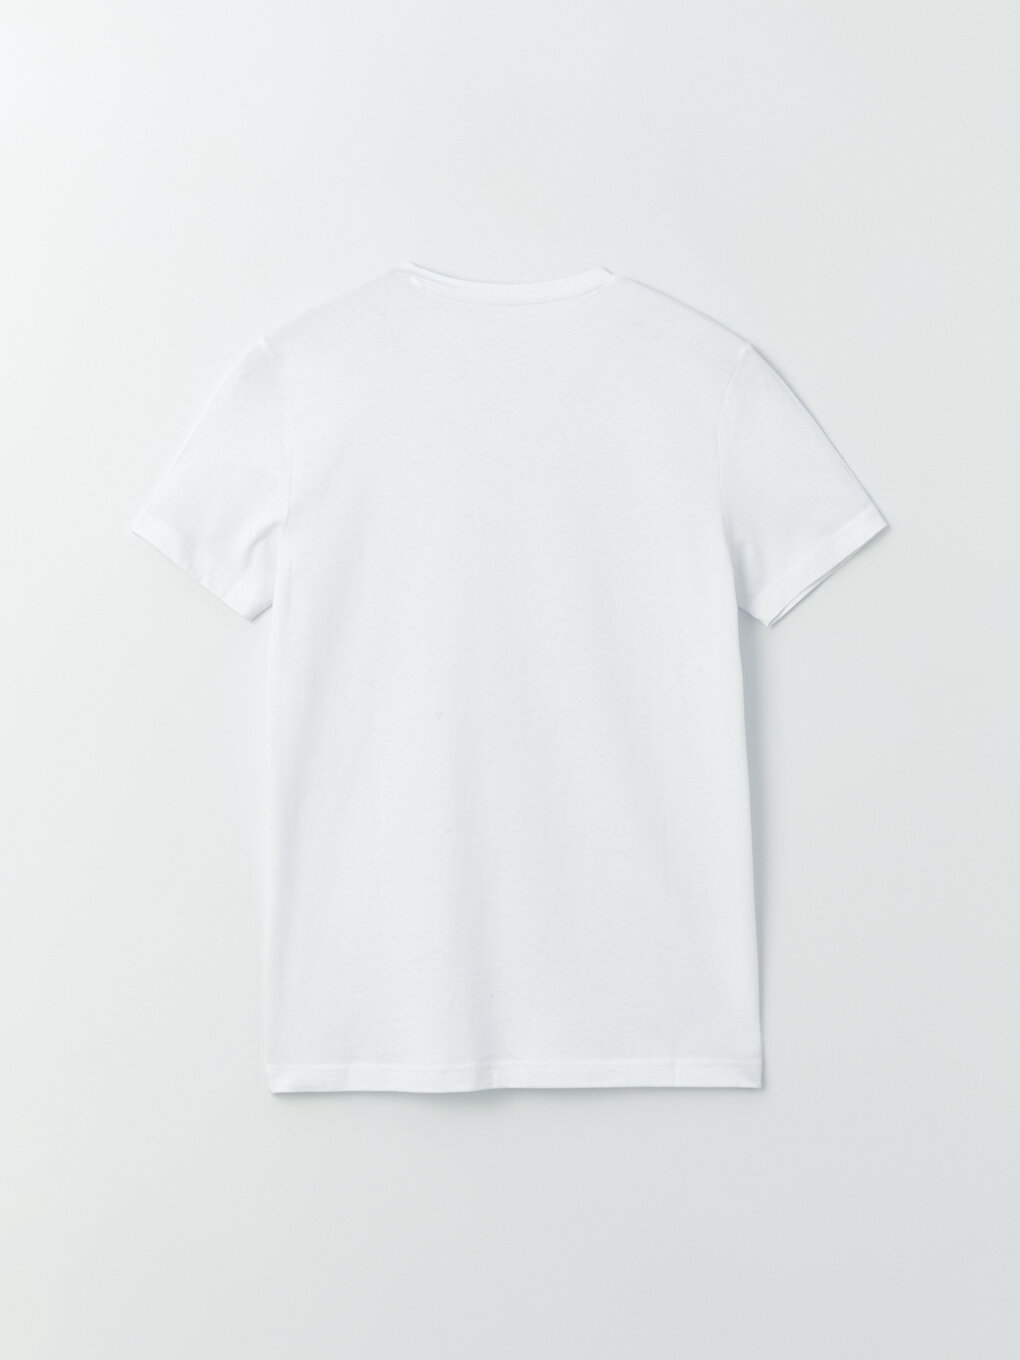 V-Neck Short Sleeve Men's T-Shirt -S41098Z8-Q6K - S41098Z8-Q6K - LC Waikiki